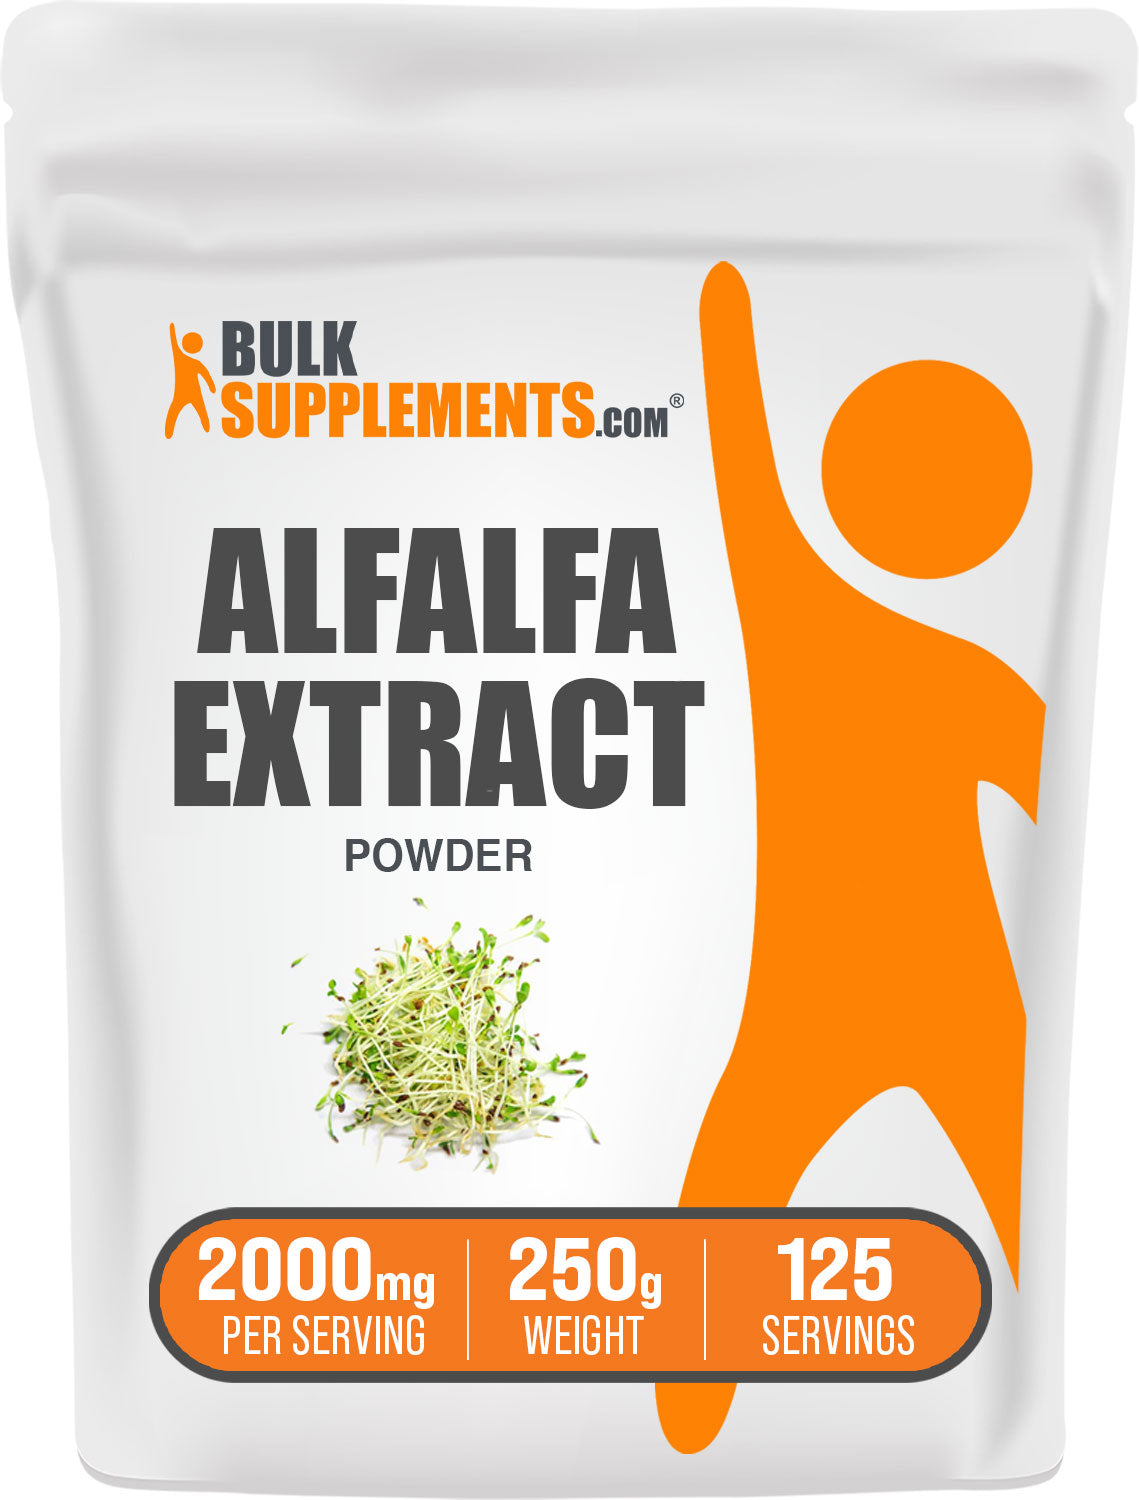 BulkSupplements.com Alfalfa Extract Powder 250g Bag